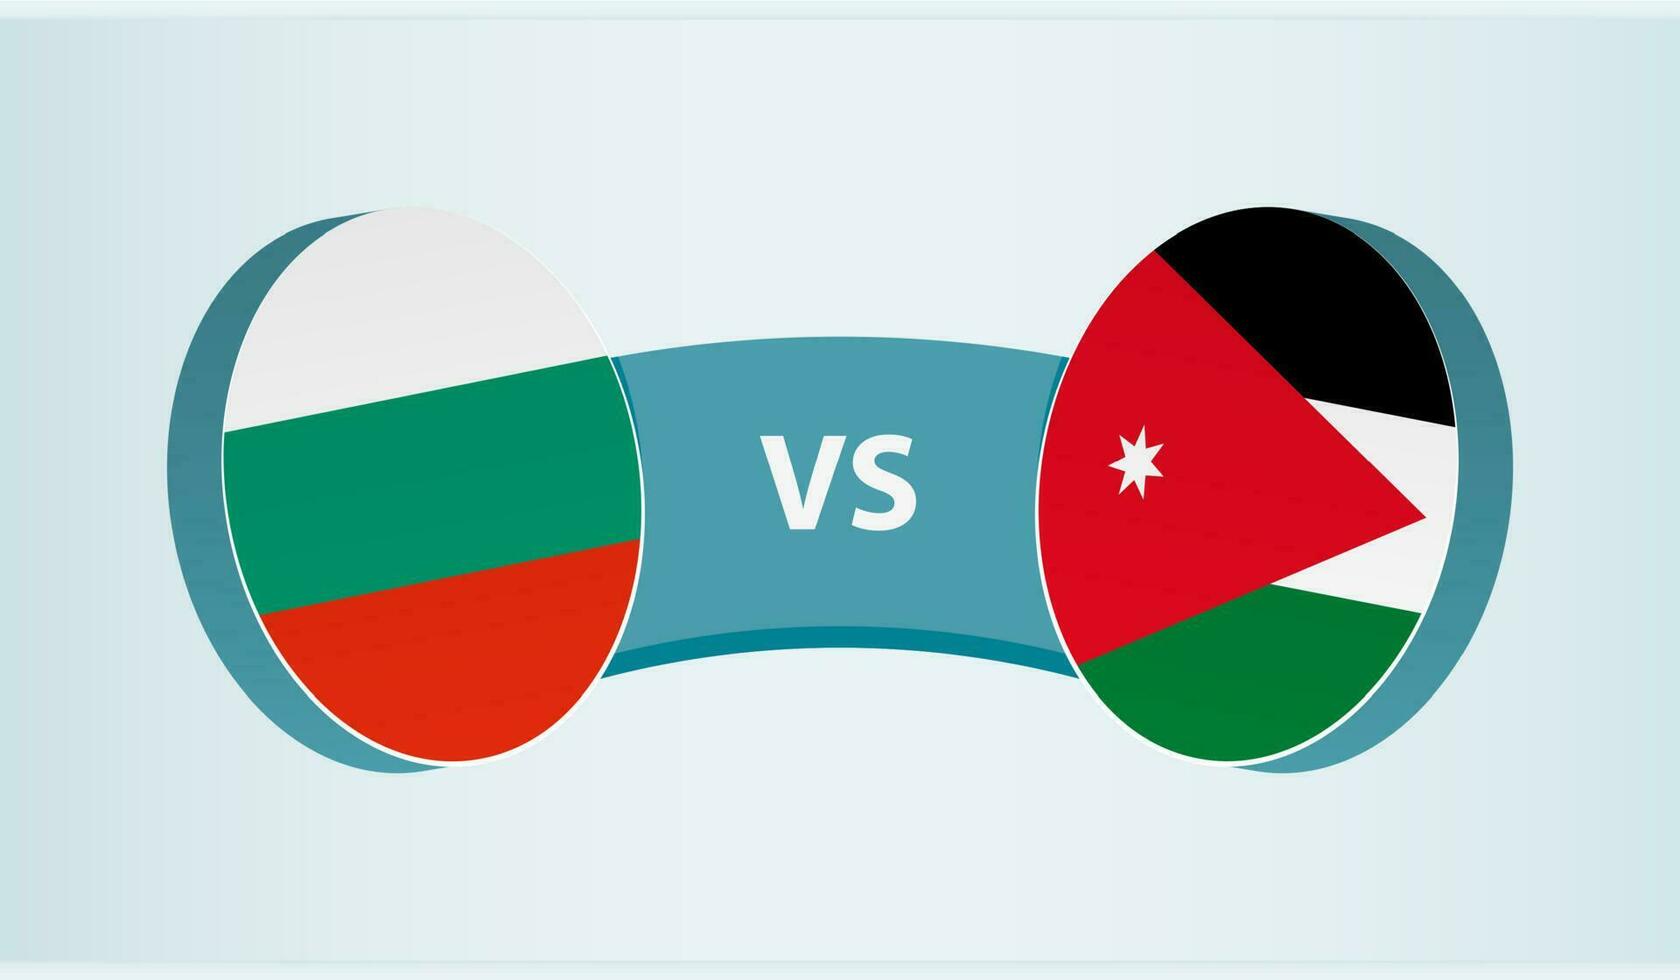 bulgarien mot Jordan, team sporter konkurrens begrepp. vektor